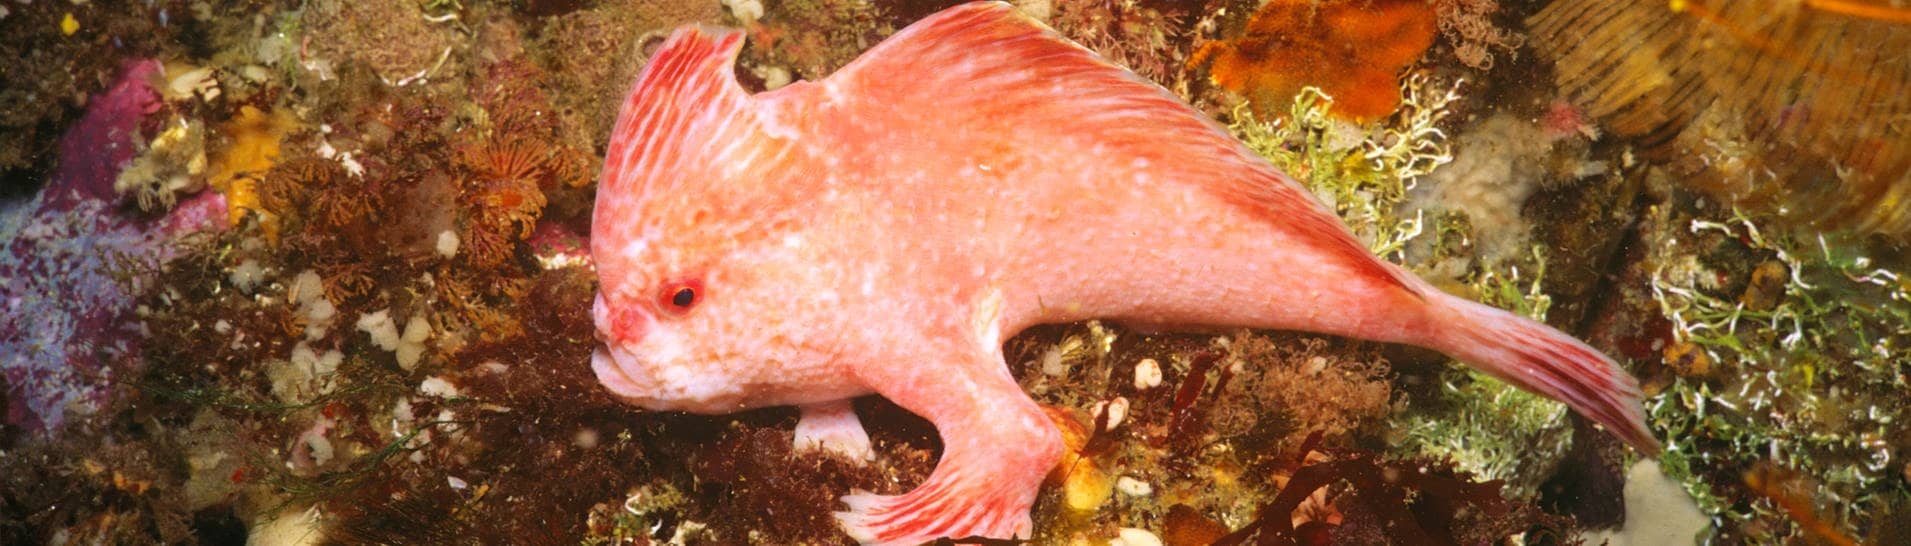 Dieser rosa Handfisch wird bis zu 10 cm lang und ist eine sehr seltene Art. Er hat vorne am Körper Flossen, die wie kleine Hände aussehen. (Foto: IMAGO, IMAGO / agefotostock)